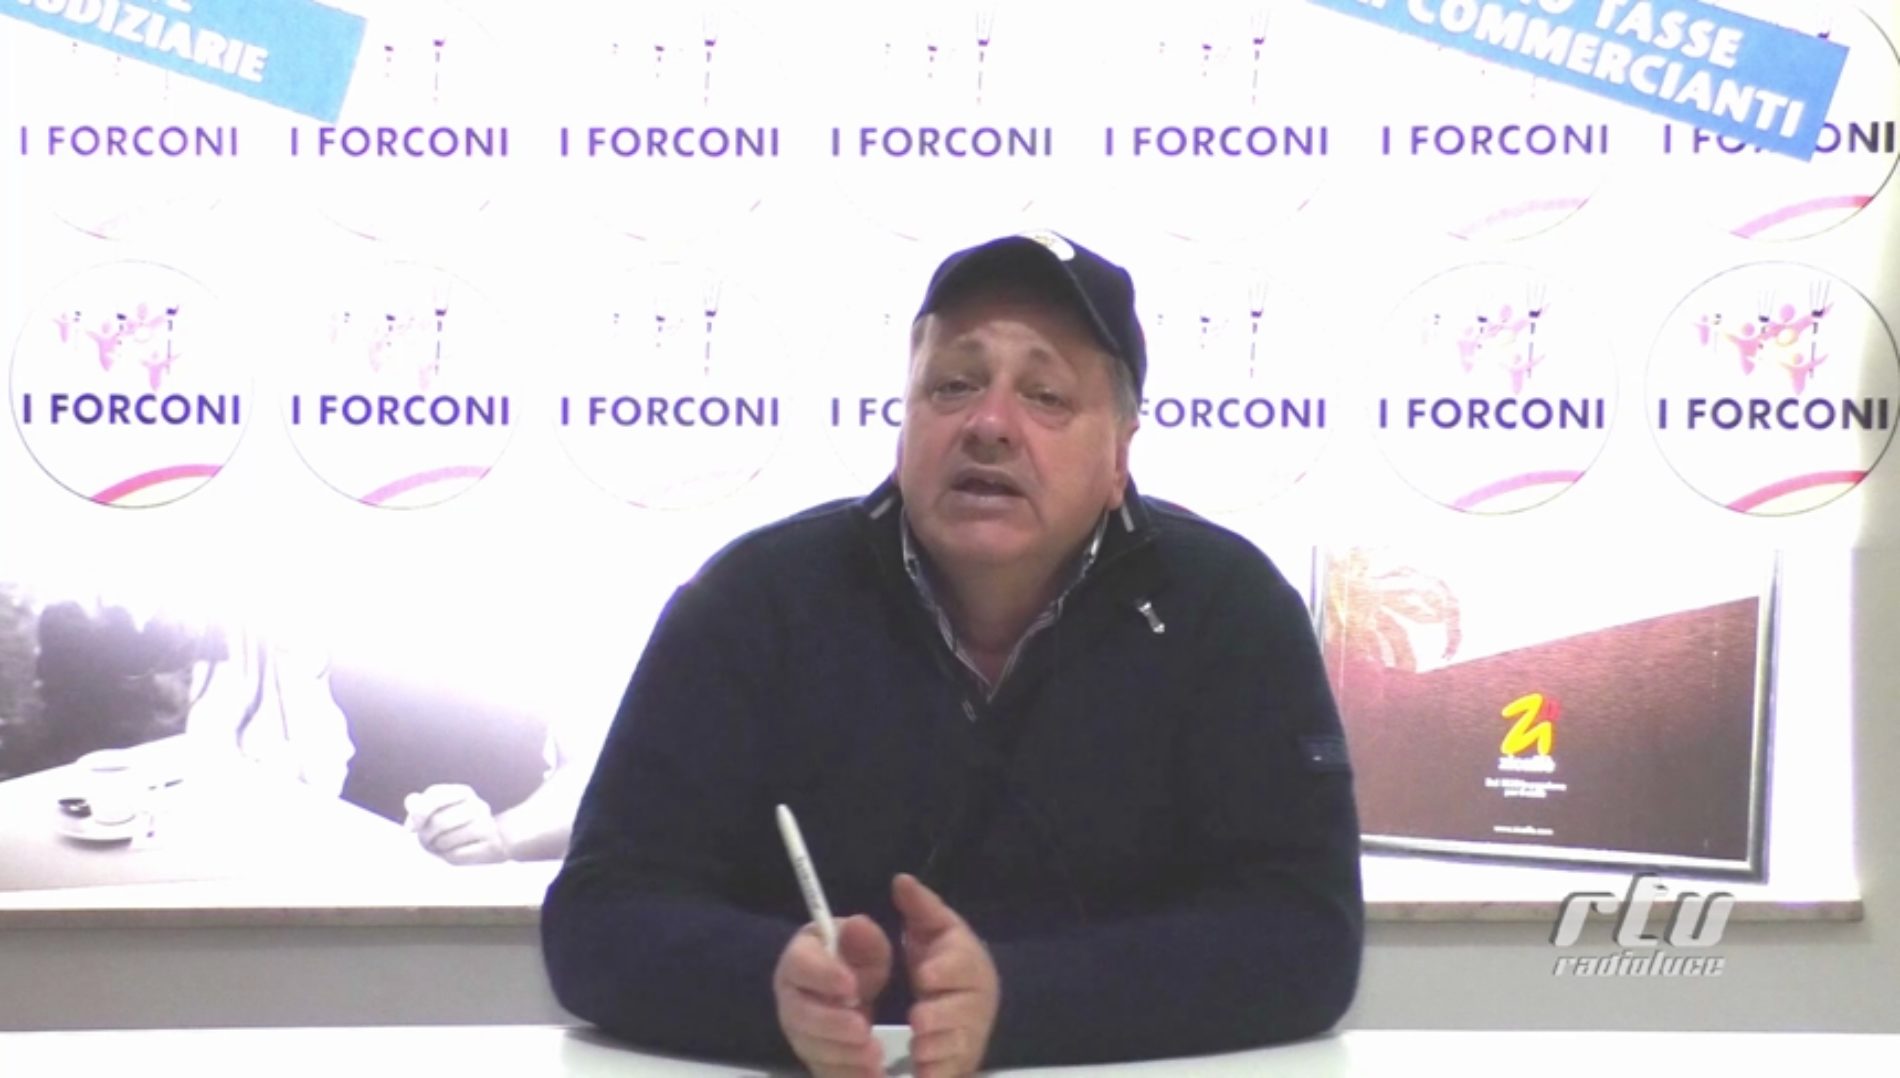 Video / I Forconi, Mariano Ferro: ” Che cosa ha fatto la Regione Siciliana in 5 anni? Nulla”